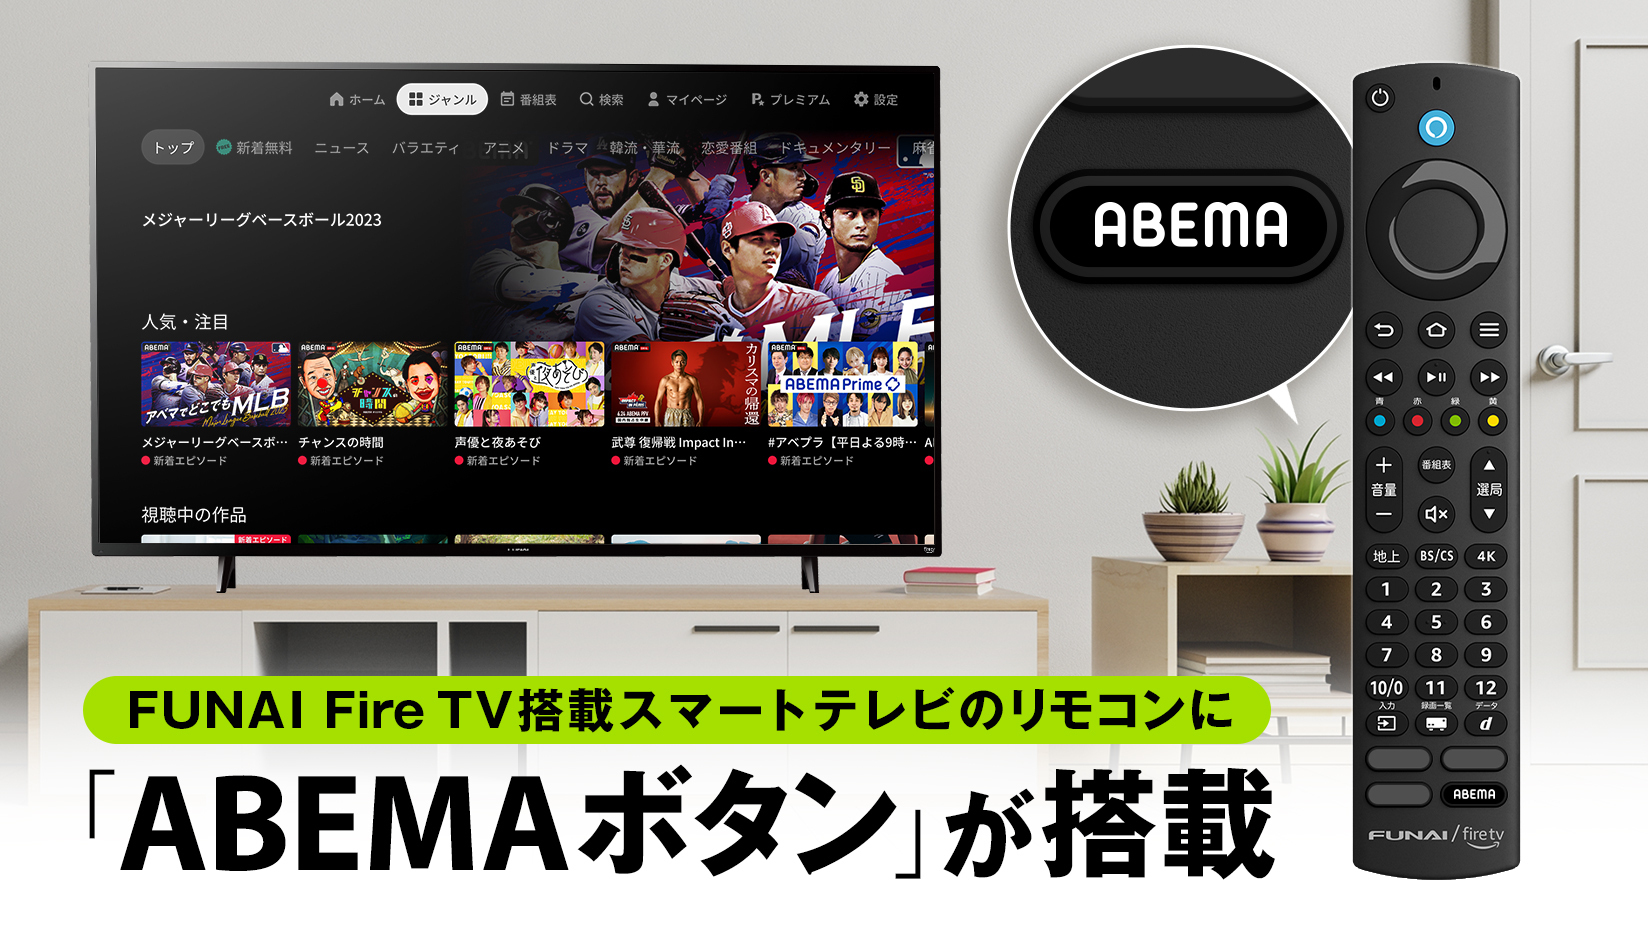 新しい未来のテレビ「ABEMA」、「FUNAI Fire TV搭載スマートテレビ」の 